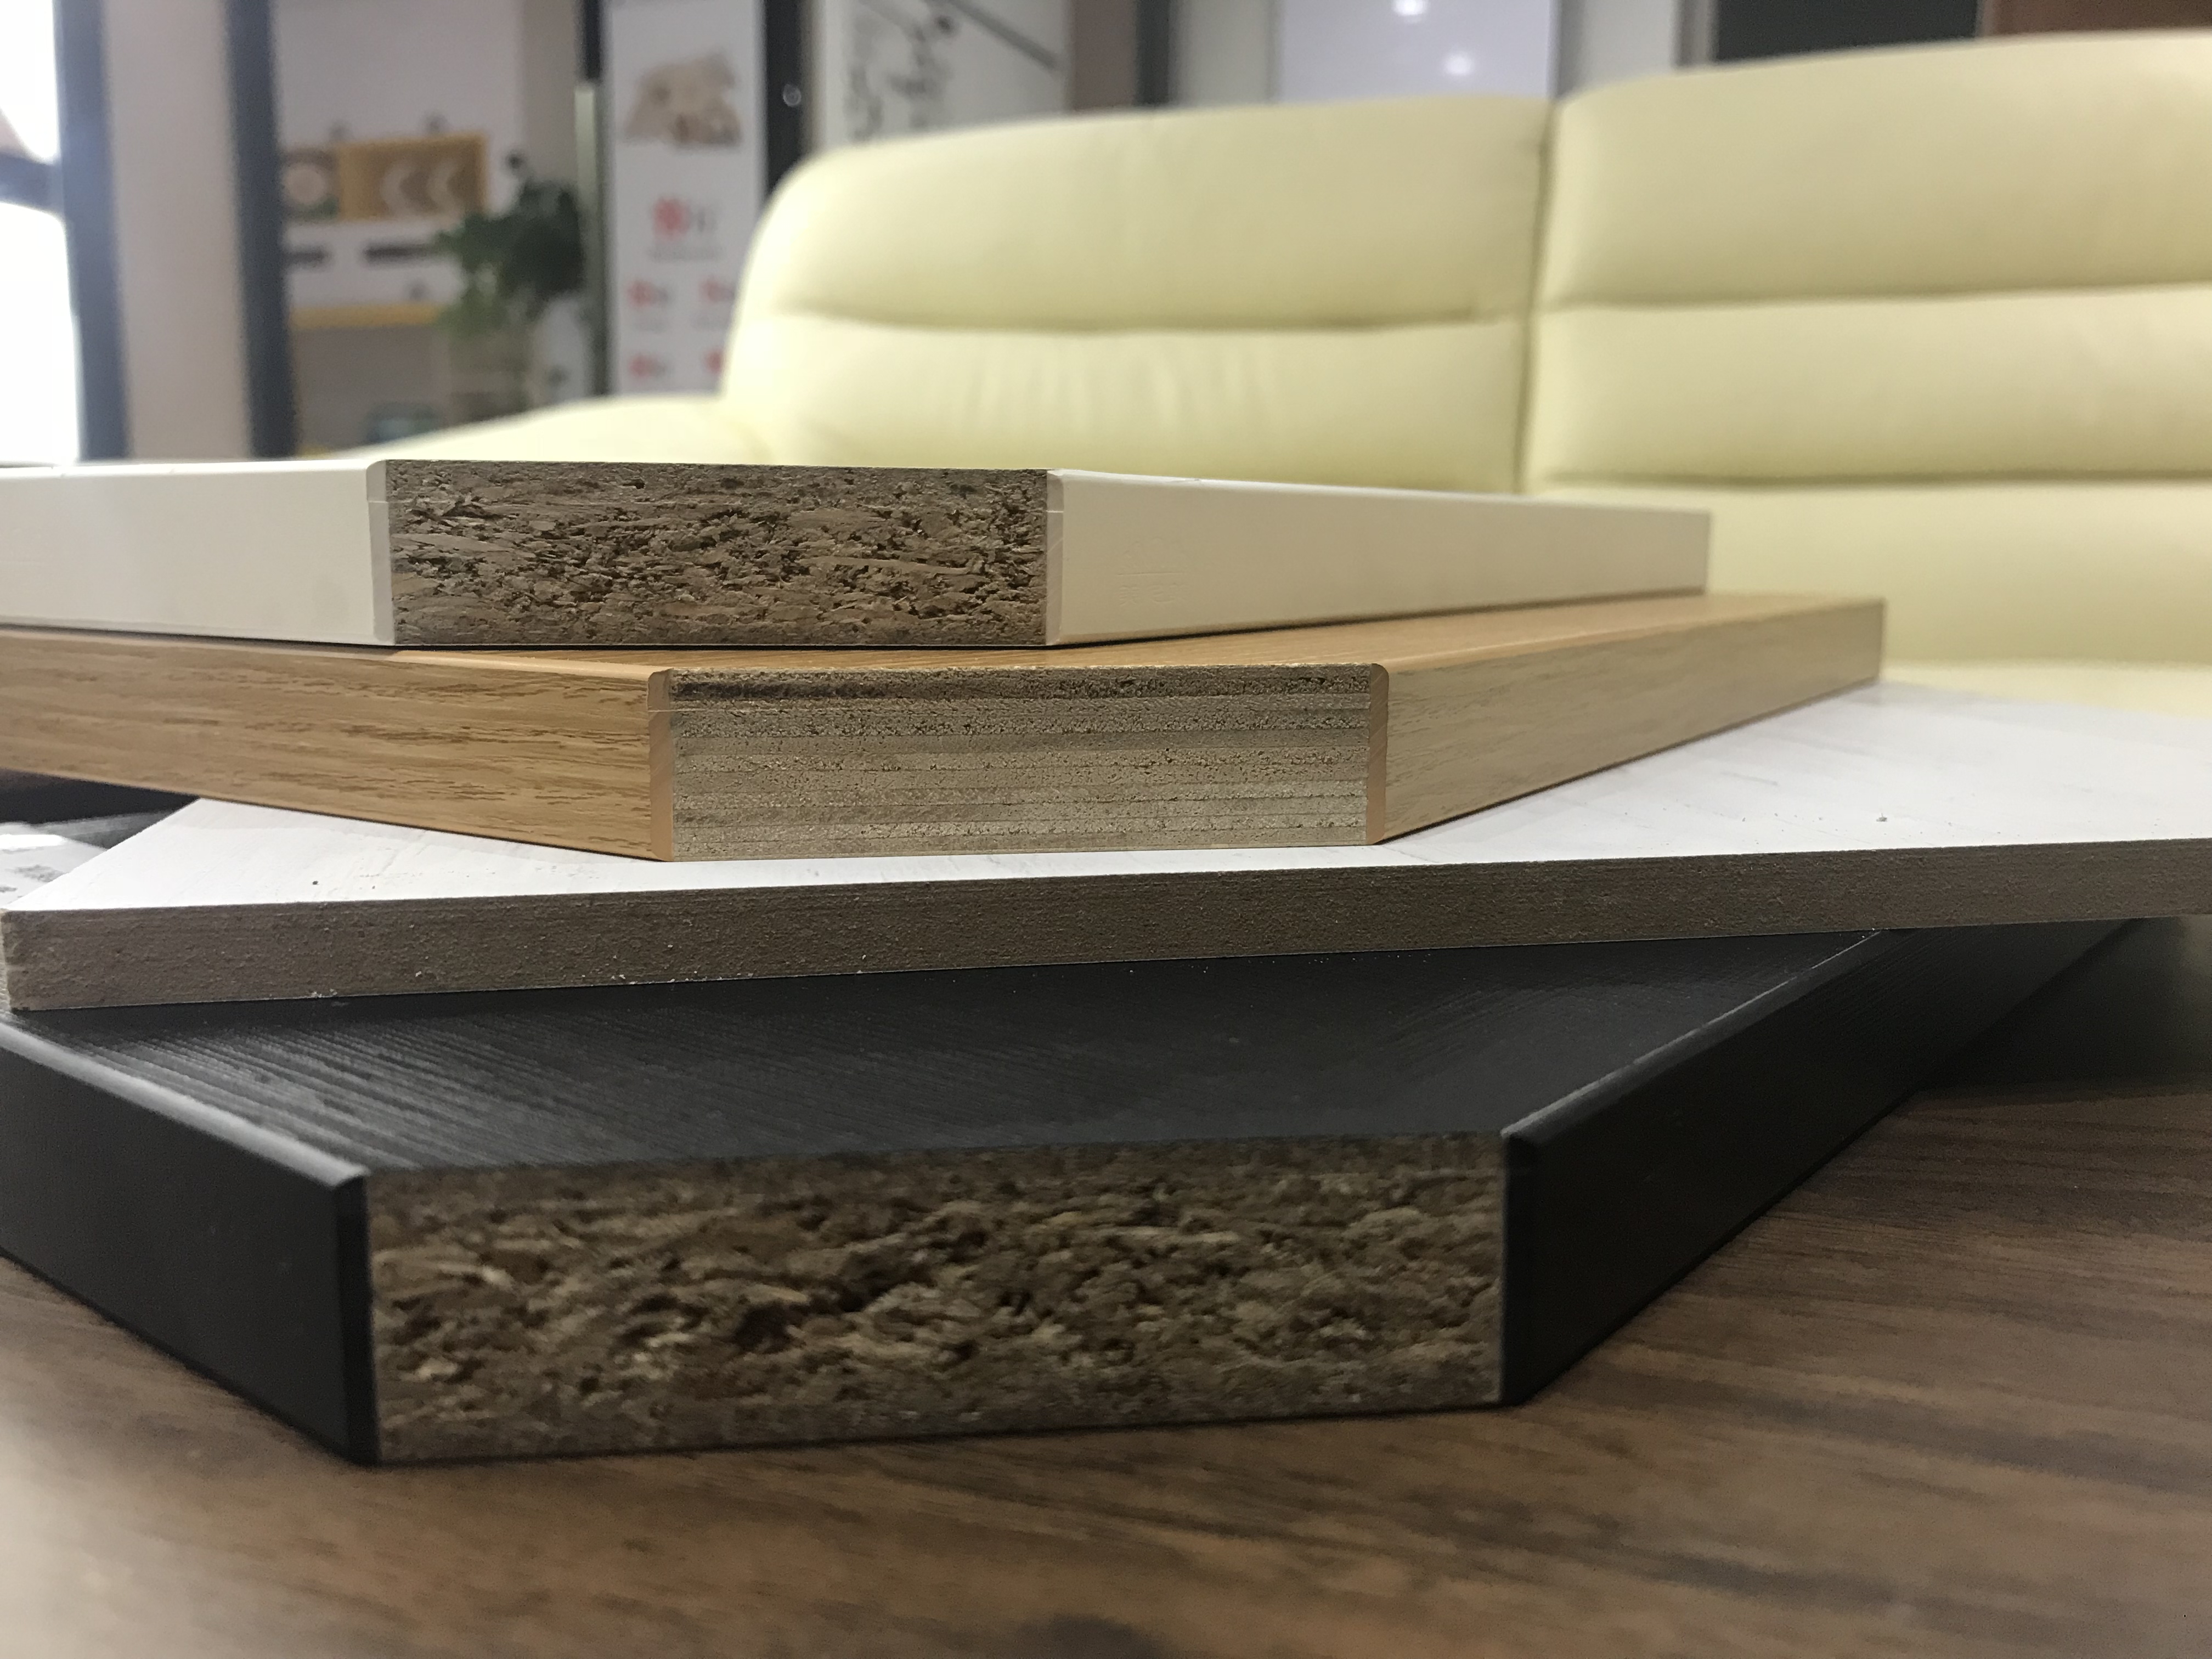 实木颗粒板的优点:环保耐用,防潮性能好,吸声隔音,品质稳定,表面平整